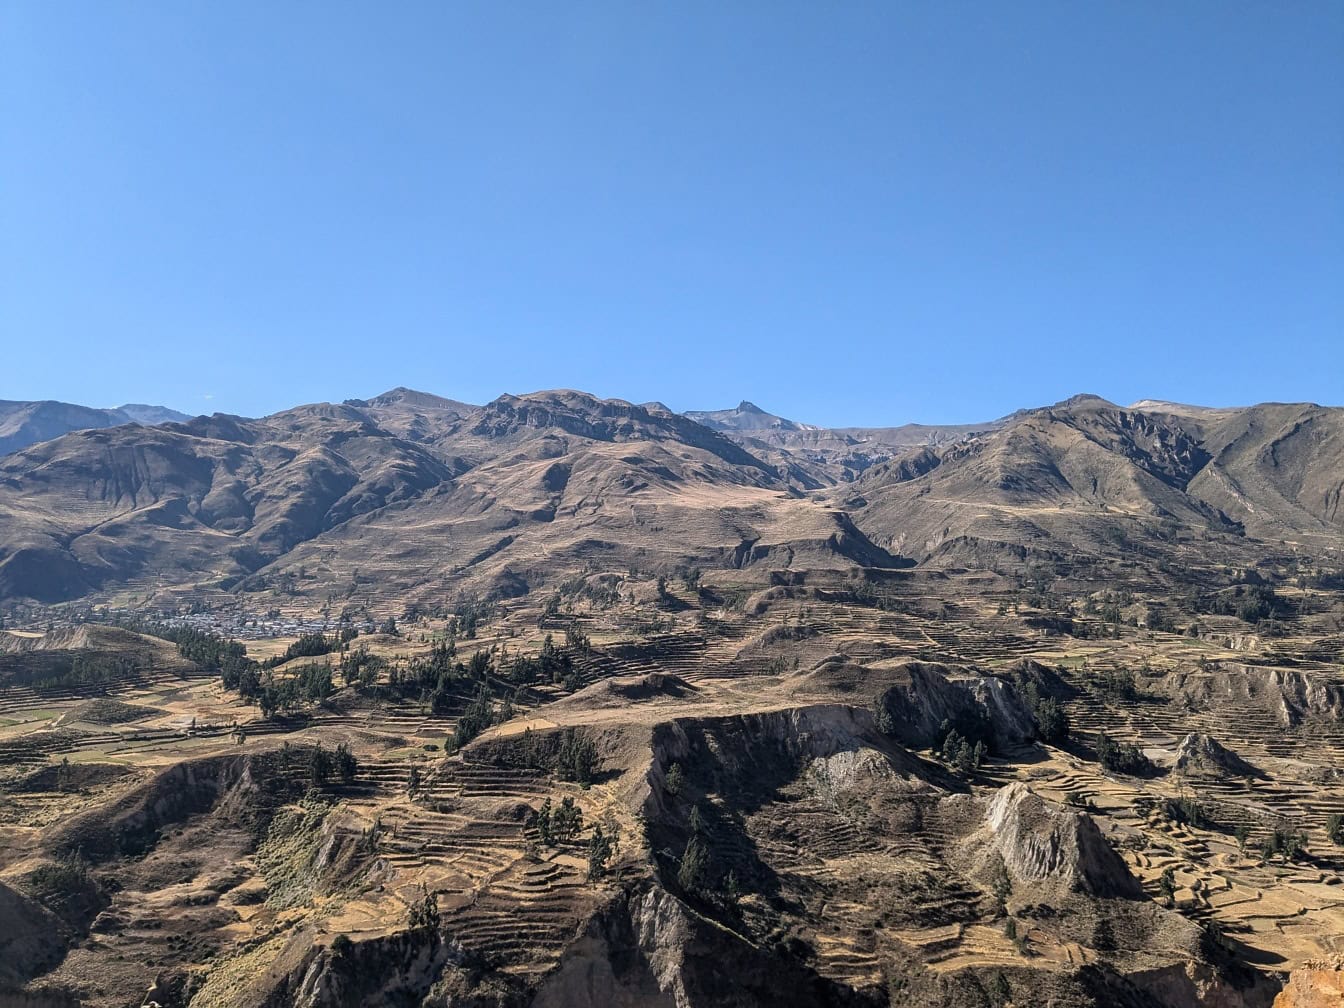 Tájkép egy völgy dombokkal a Colca kanyon területén Peruban, festői kilátás Dél-Amerikára